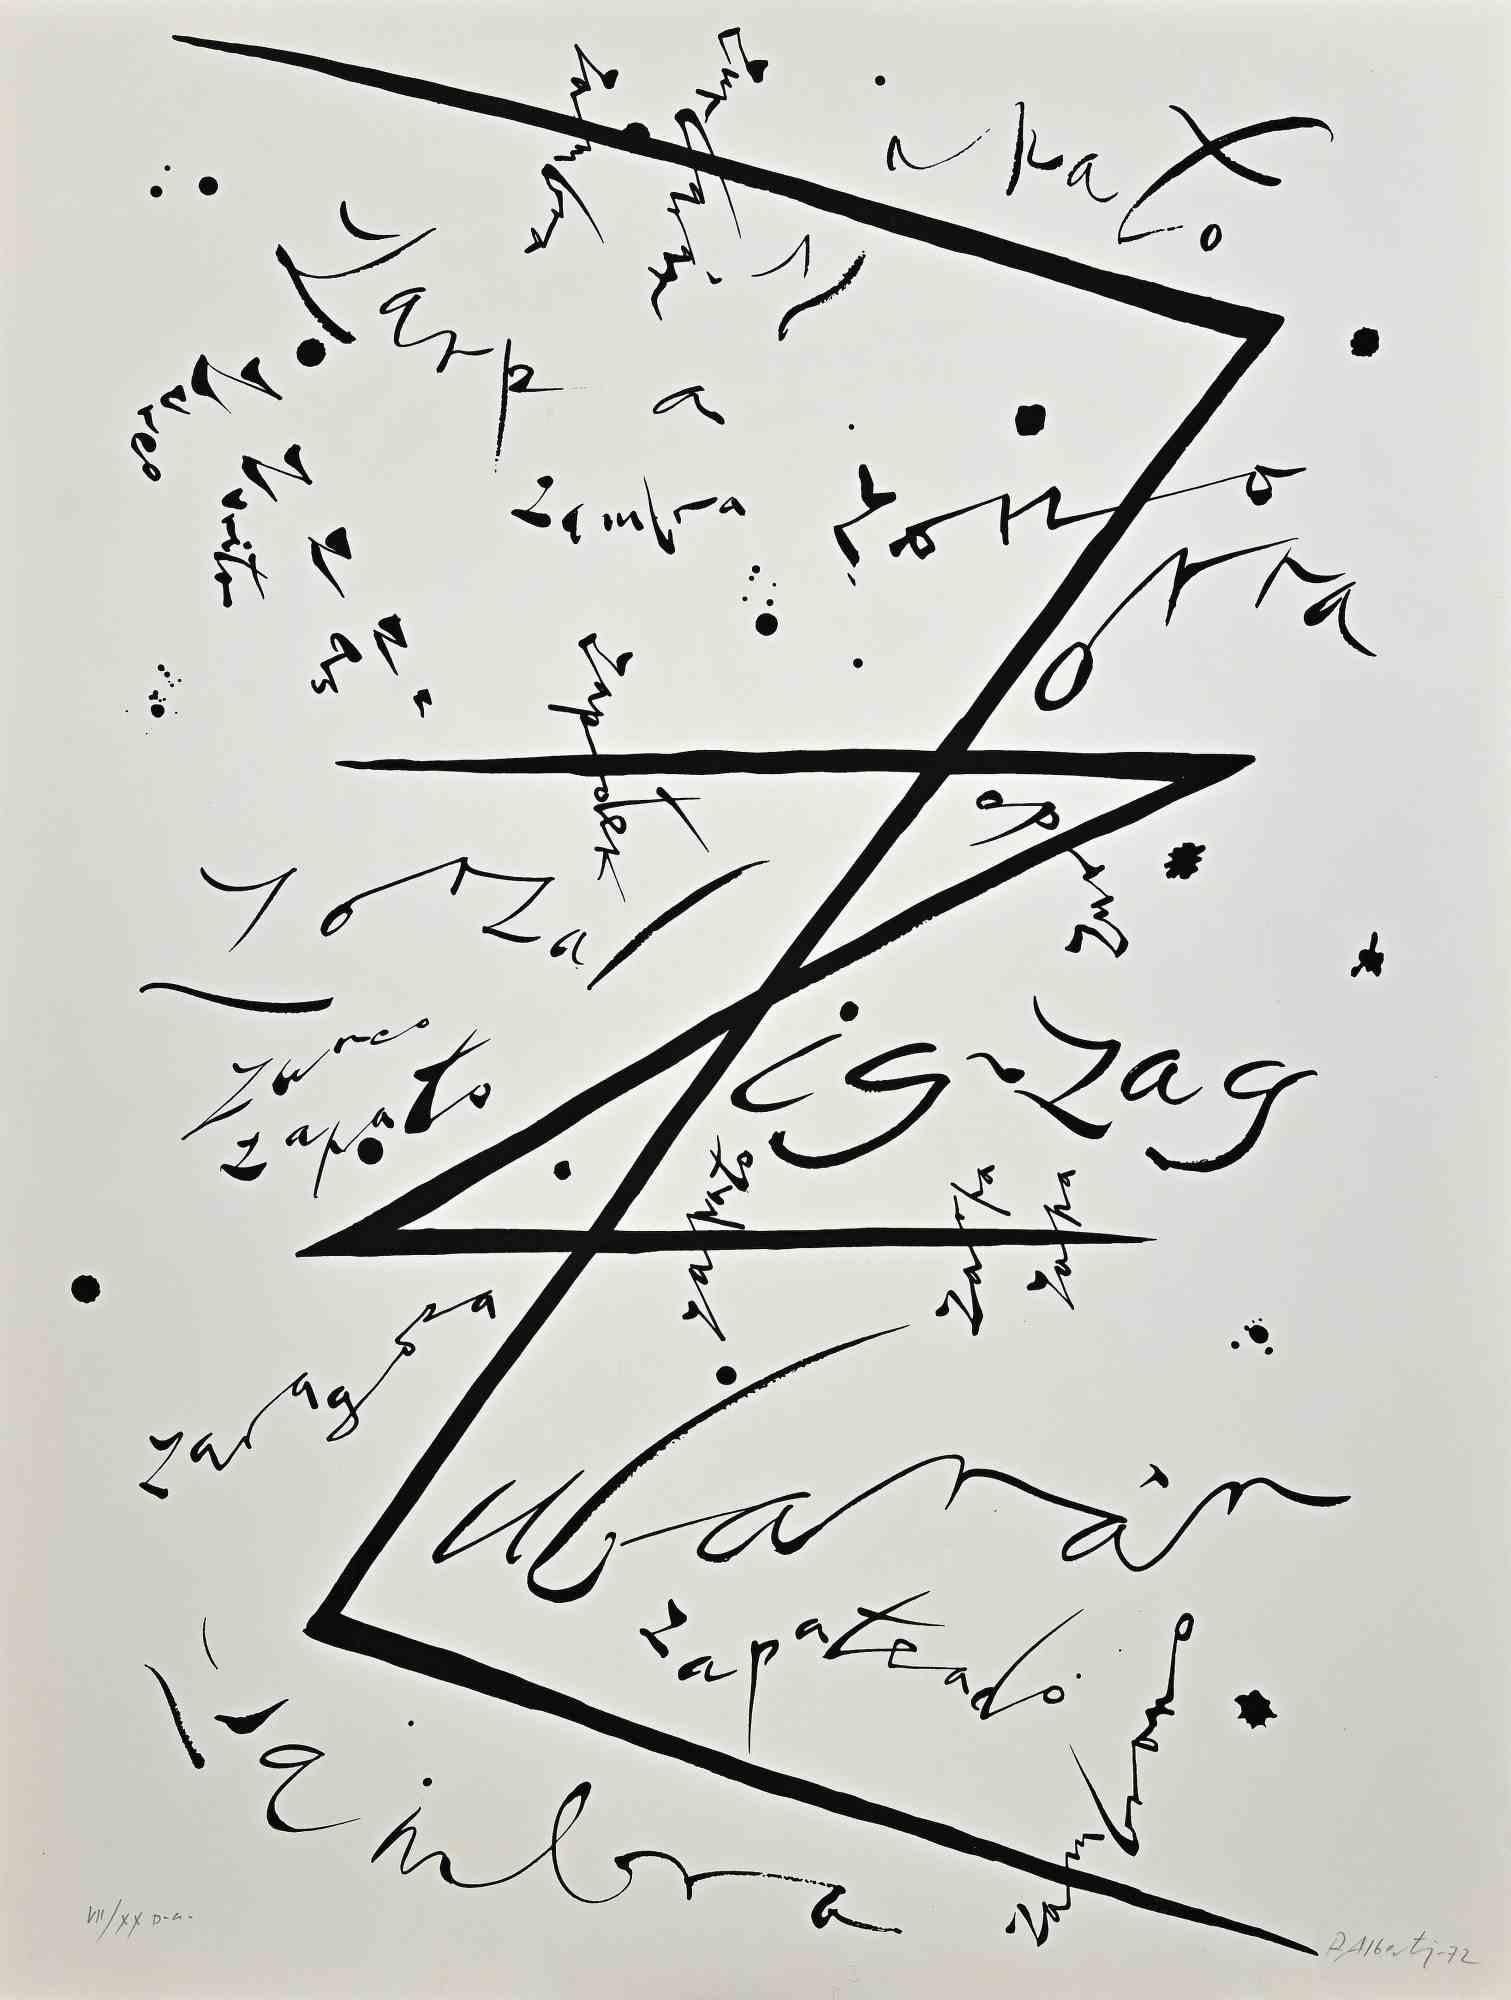 Letter Z - Lithograph by Rafael Alberti - 1972